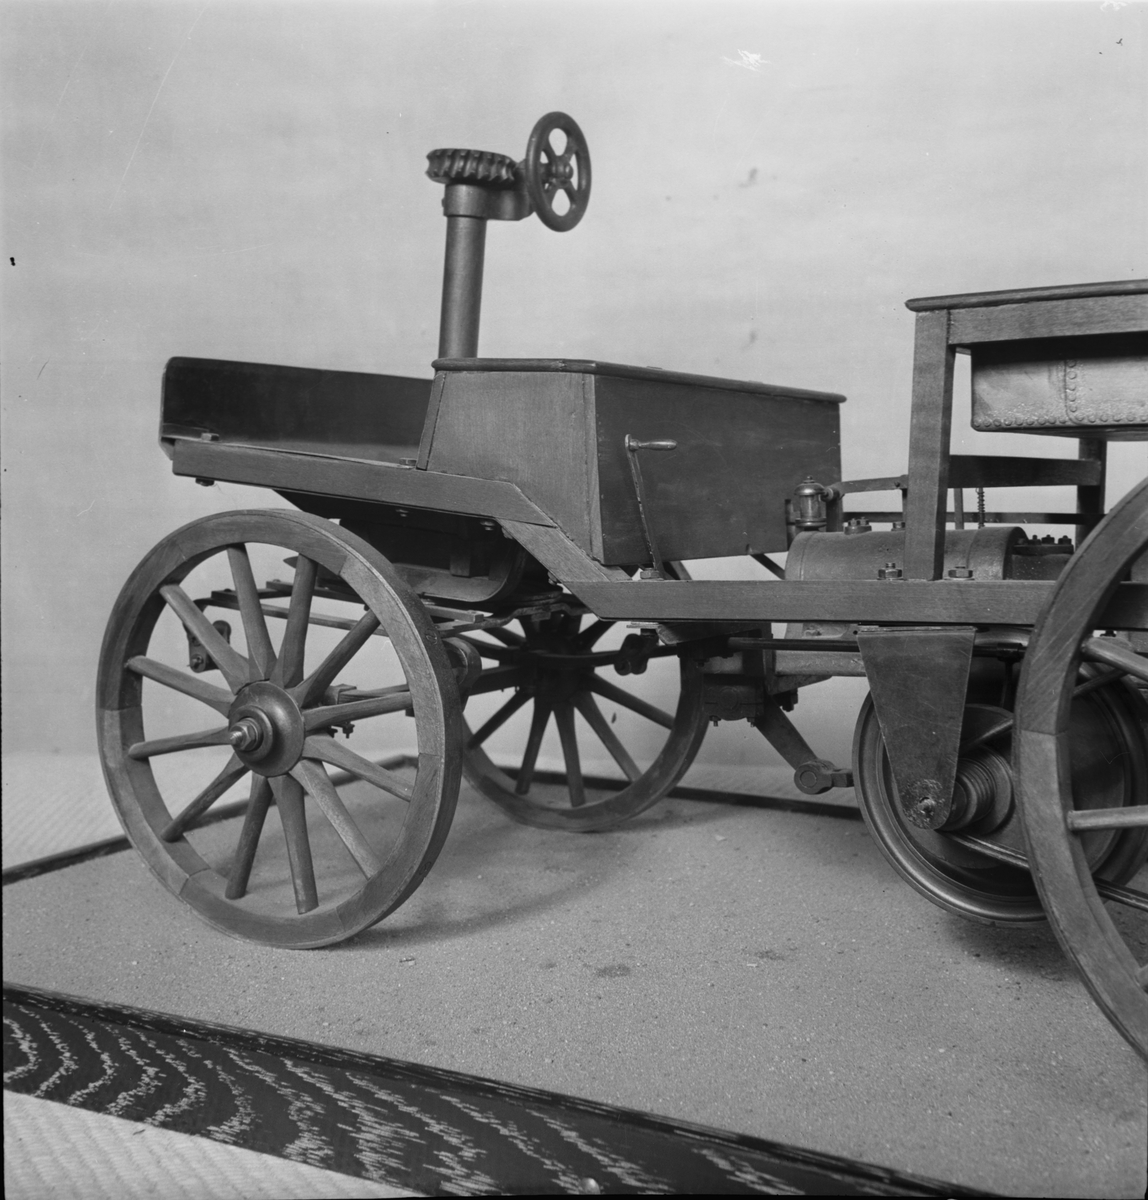 Modell i skala 1:5 av bensinmotordriven bil med hästvagnsliknande kaross. Motorn tillverkad av Märky, Bromovsky & Schultz 1888. Kraftöverföring från motorn med remmar till remskiva på bakaxeln. Ram av trä, framvagn med halvelliptiska fjädrar. Trähjul skodda med järnband. Förebilden har 2 m axelavstånd. Monterad på en platta 700 x 400 mm  Encylindrig luftkyld fyrtaktsmotor Effekt cirka 4 hk